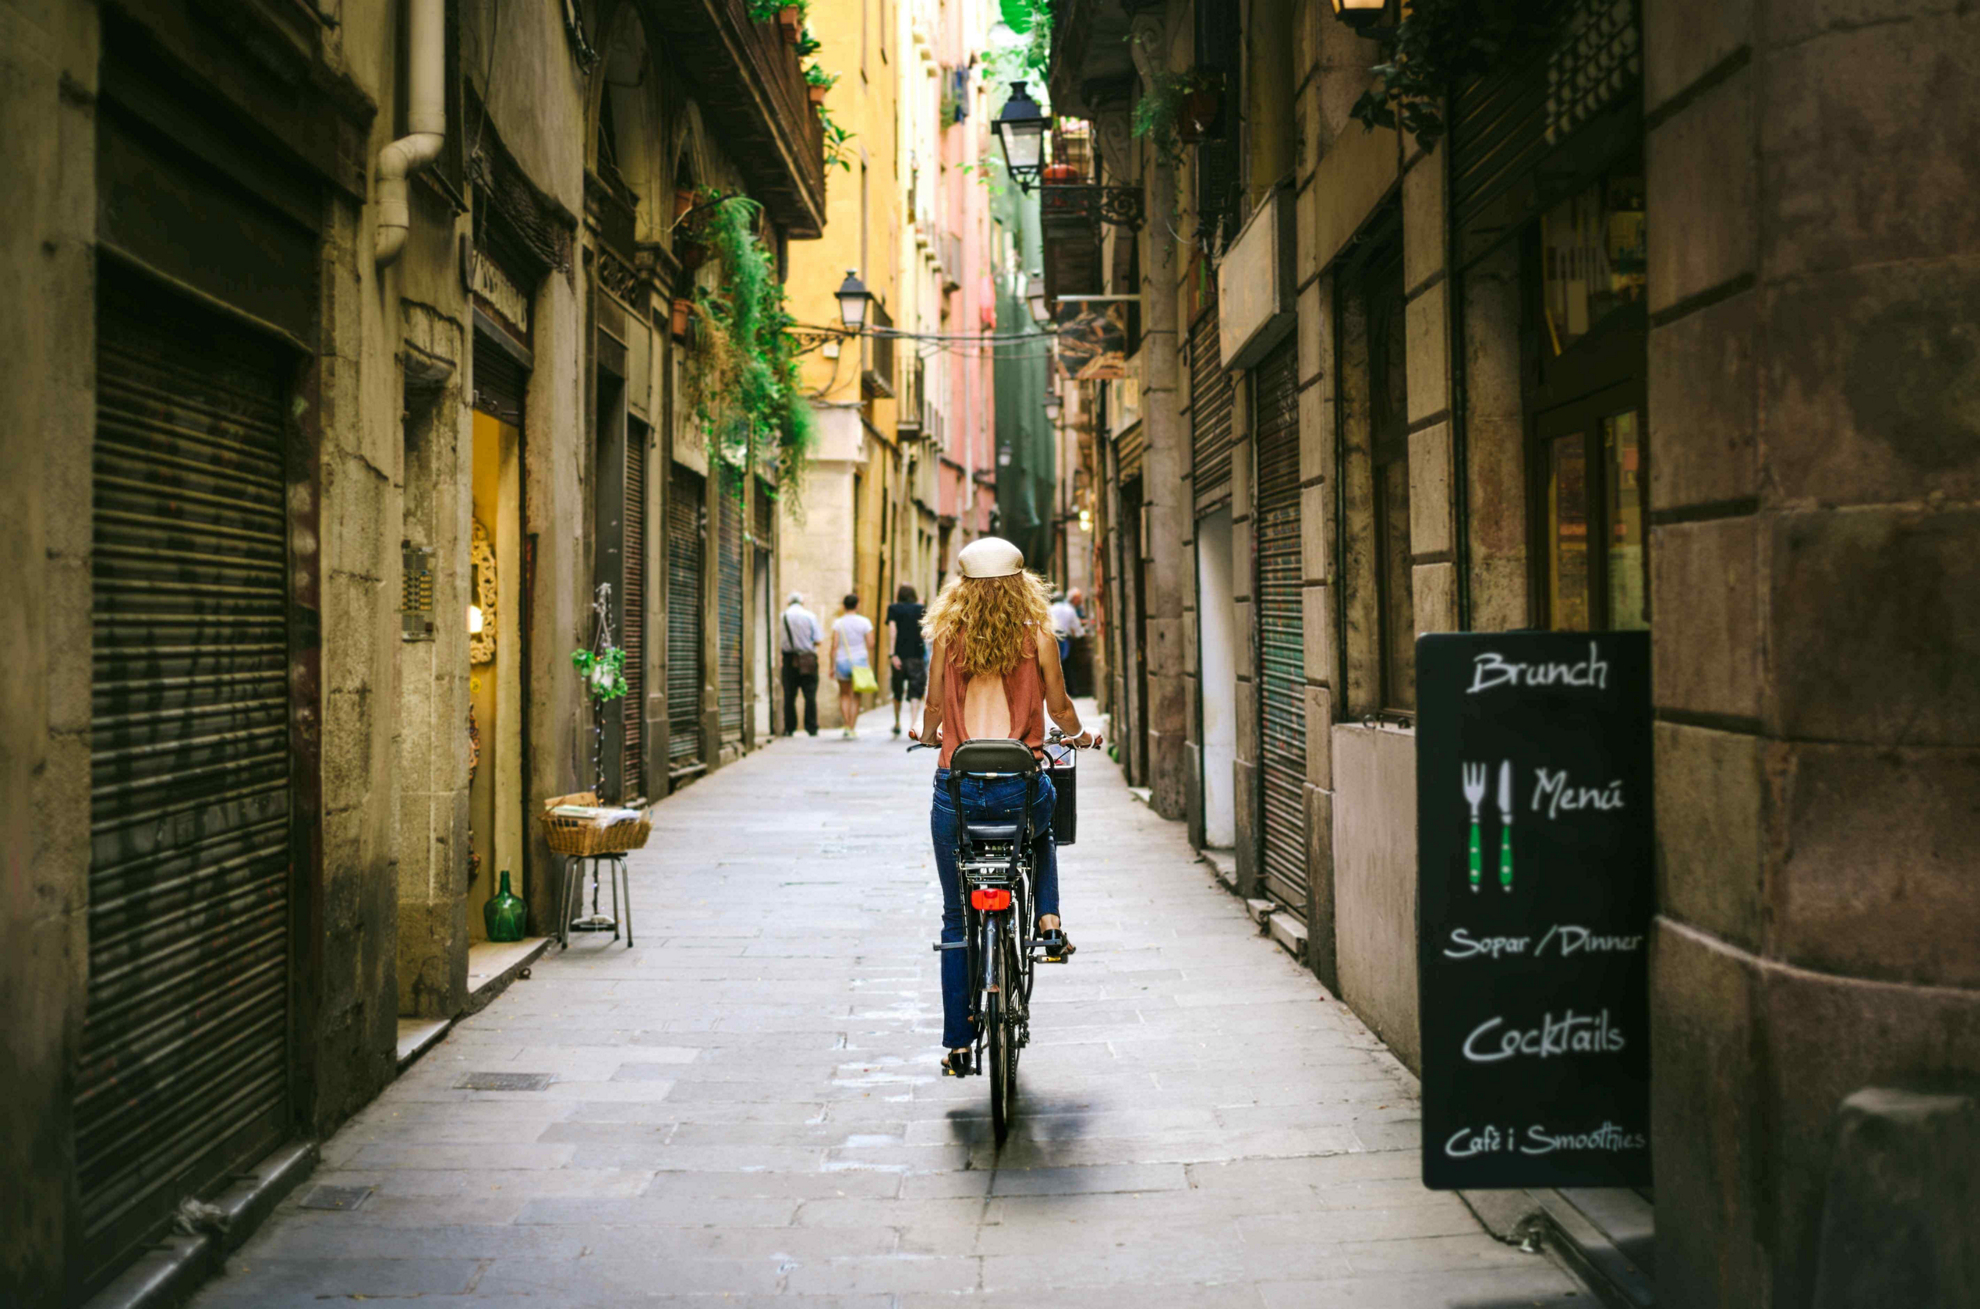 Frau auf dem Fahrrad in einer Gasse von Barcelona-Altstadt.